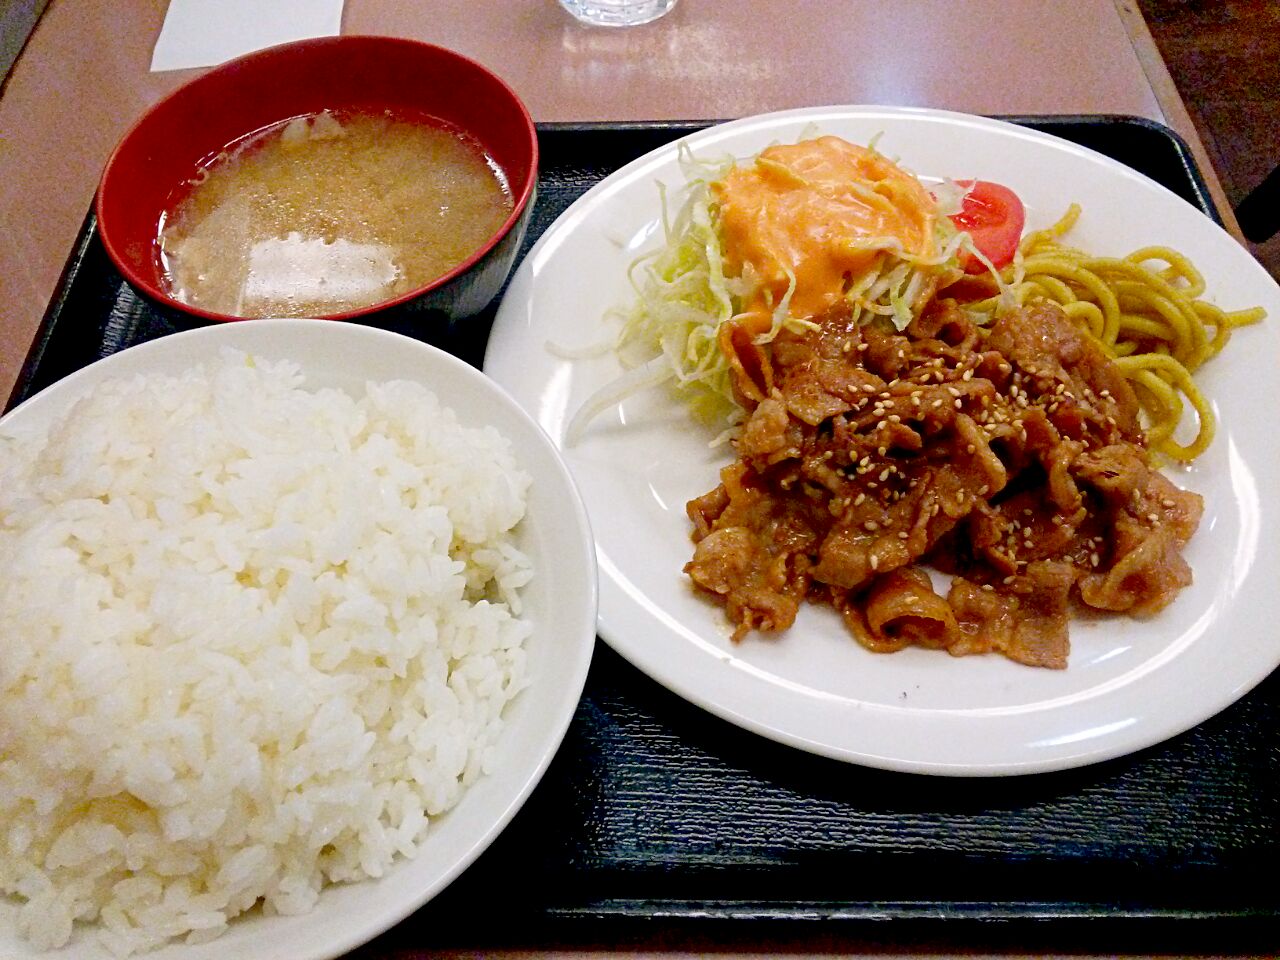 ミトヤ の特製タレ焼肉定食 630円ご飯の大盛りがサービスの洋食屋です秘伝のタレと肉の旨みの二重奏がキャッチの定食以外にも 色んな組み合わせが出来ますが 先ずは人気メニューを頼んでみました若者に人気の洋食屋ですノ 東京ライオンズ Snapdish スナップディッシュ